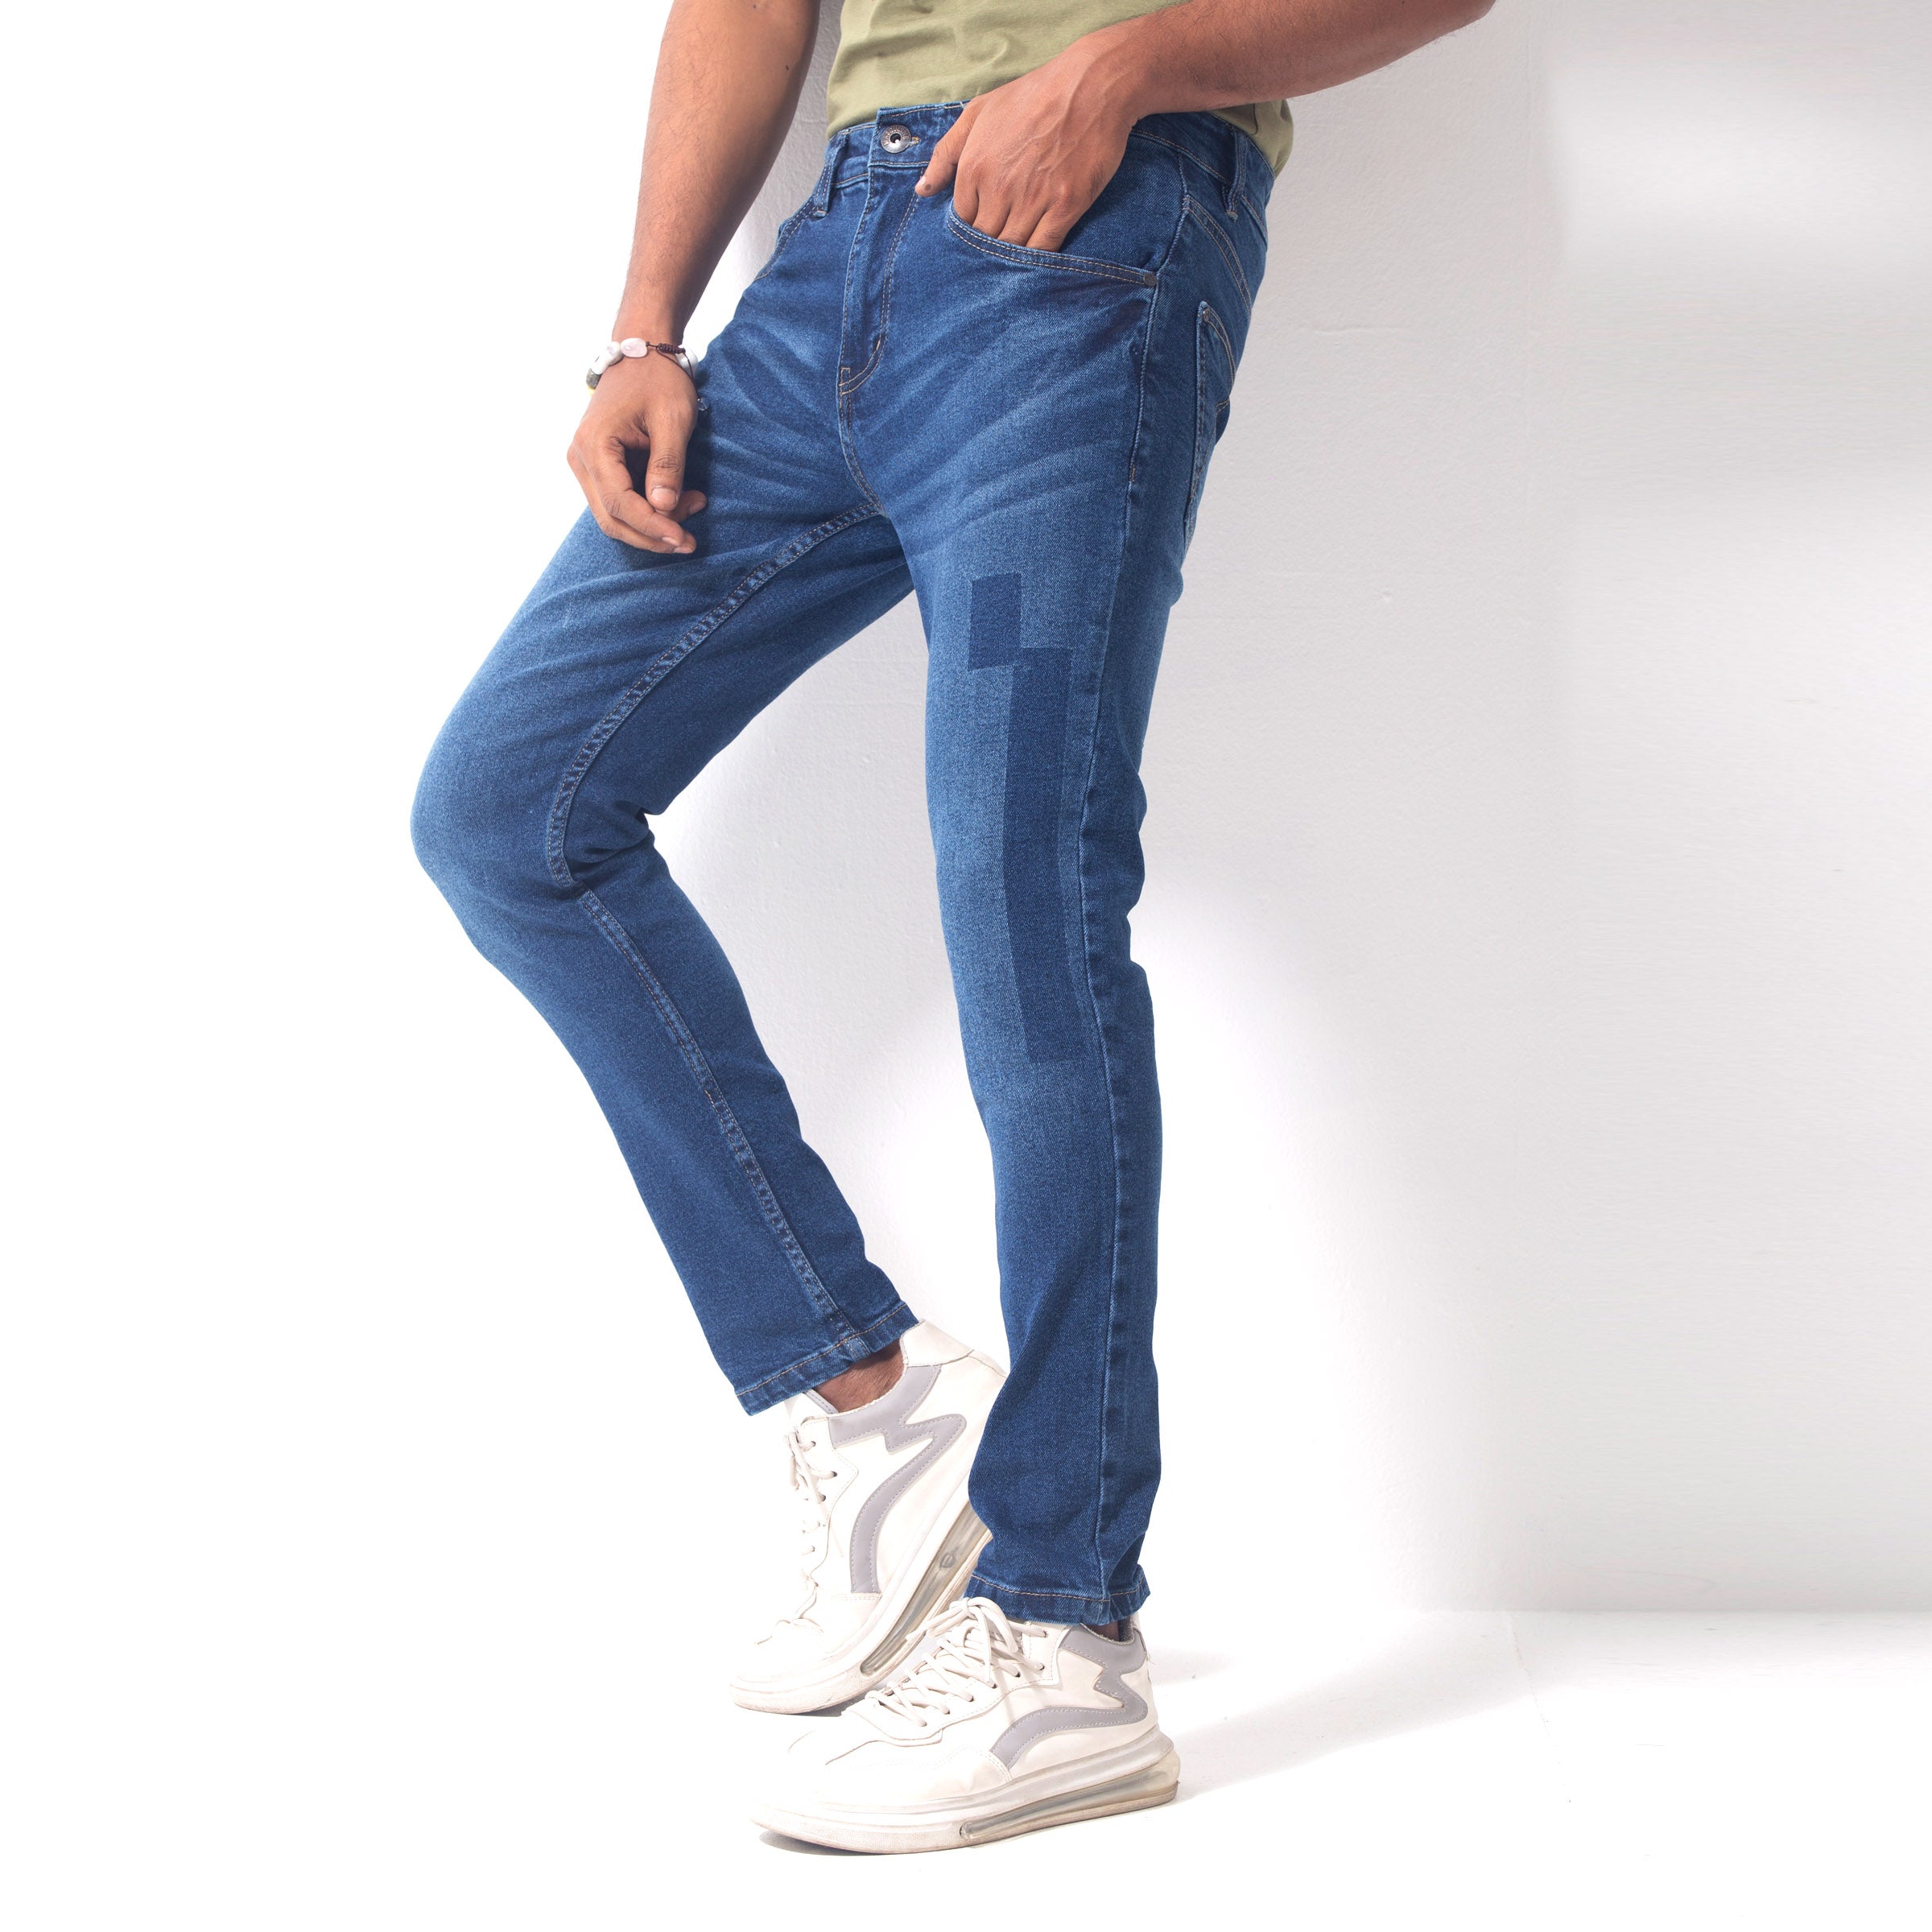 Stretchable Vintage Jeans Pant - Avalanche Blue